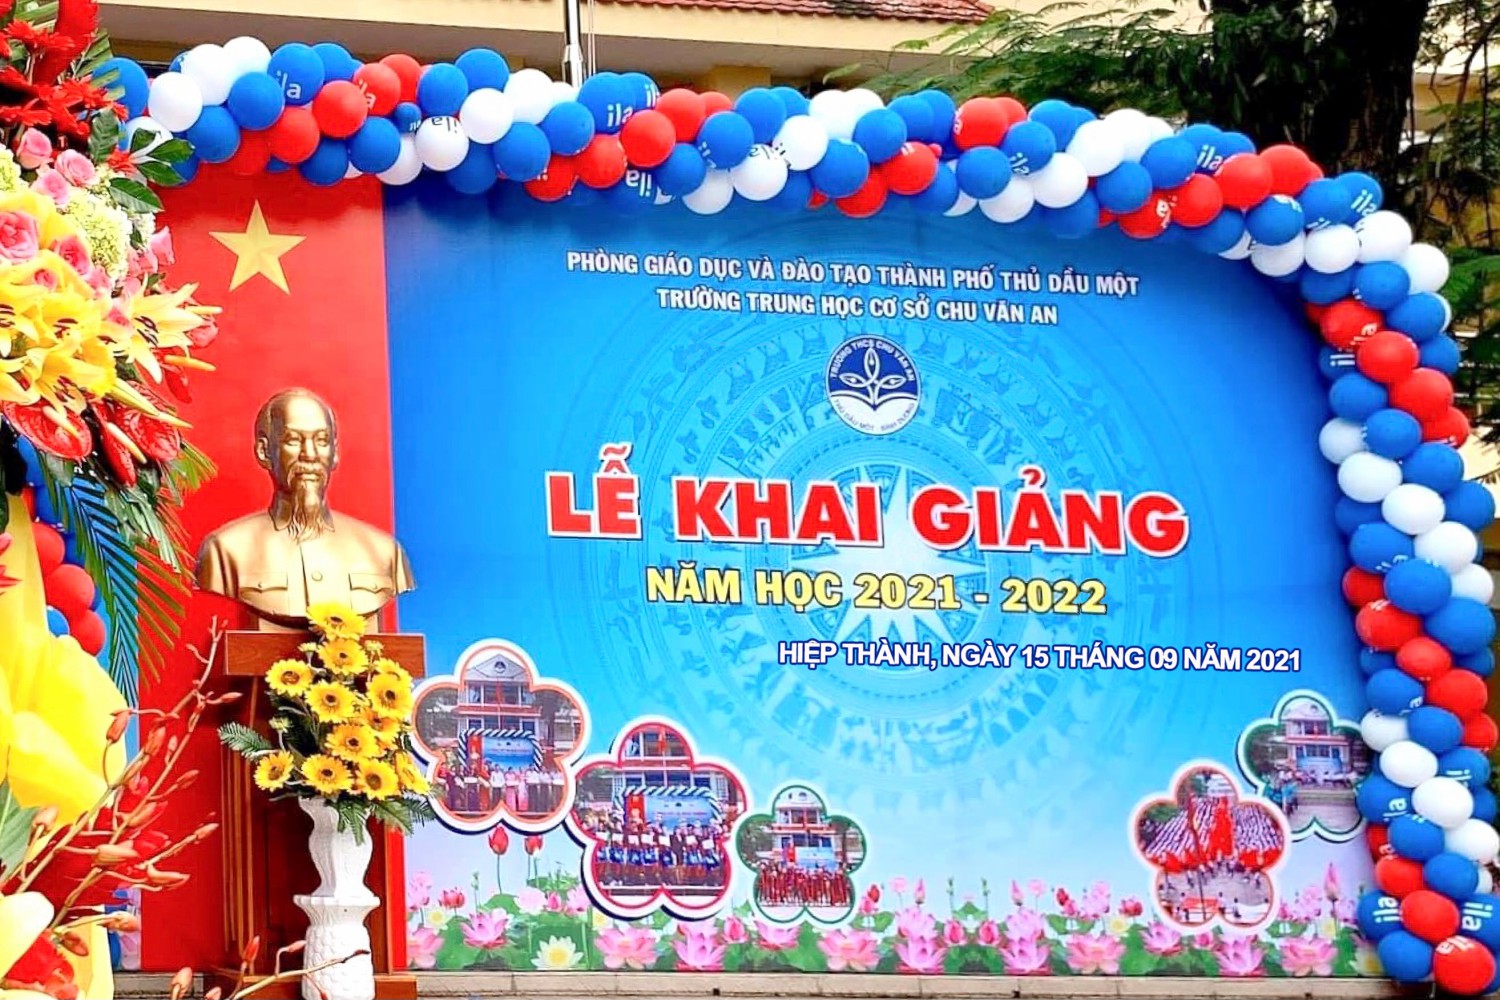 Lễ Khai giảng đặc biệt năm học 2021 – 2022 tại trường THCS Chu Văn An, thành phố Thủ Dầu Một, tỉnh Bình Dương